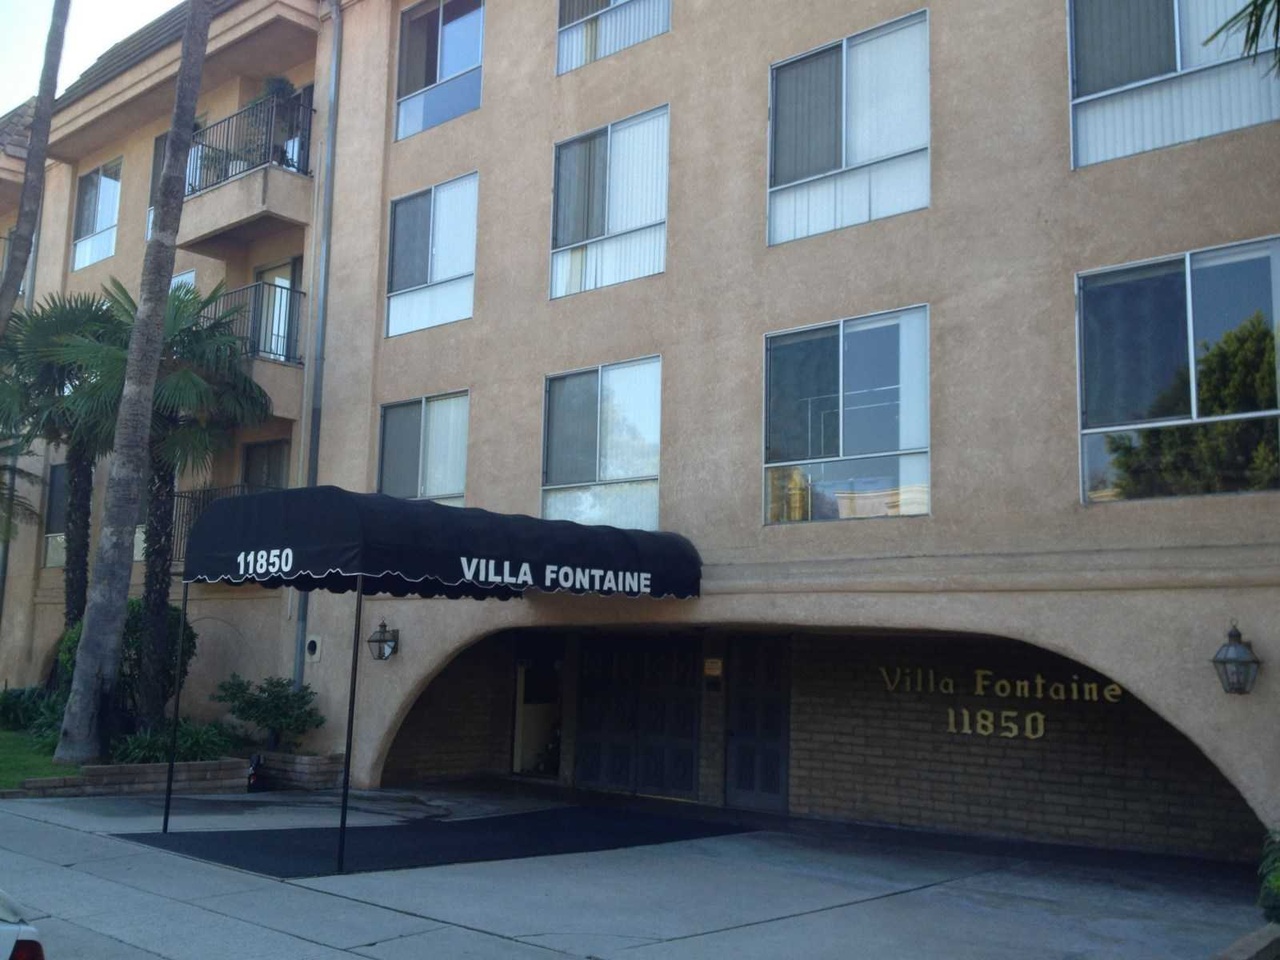 Laurel Villa - Apartments in Valley Village, CA